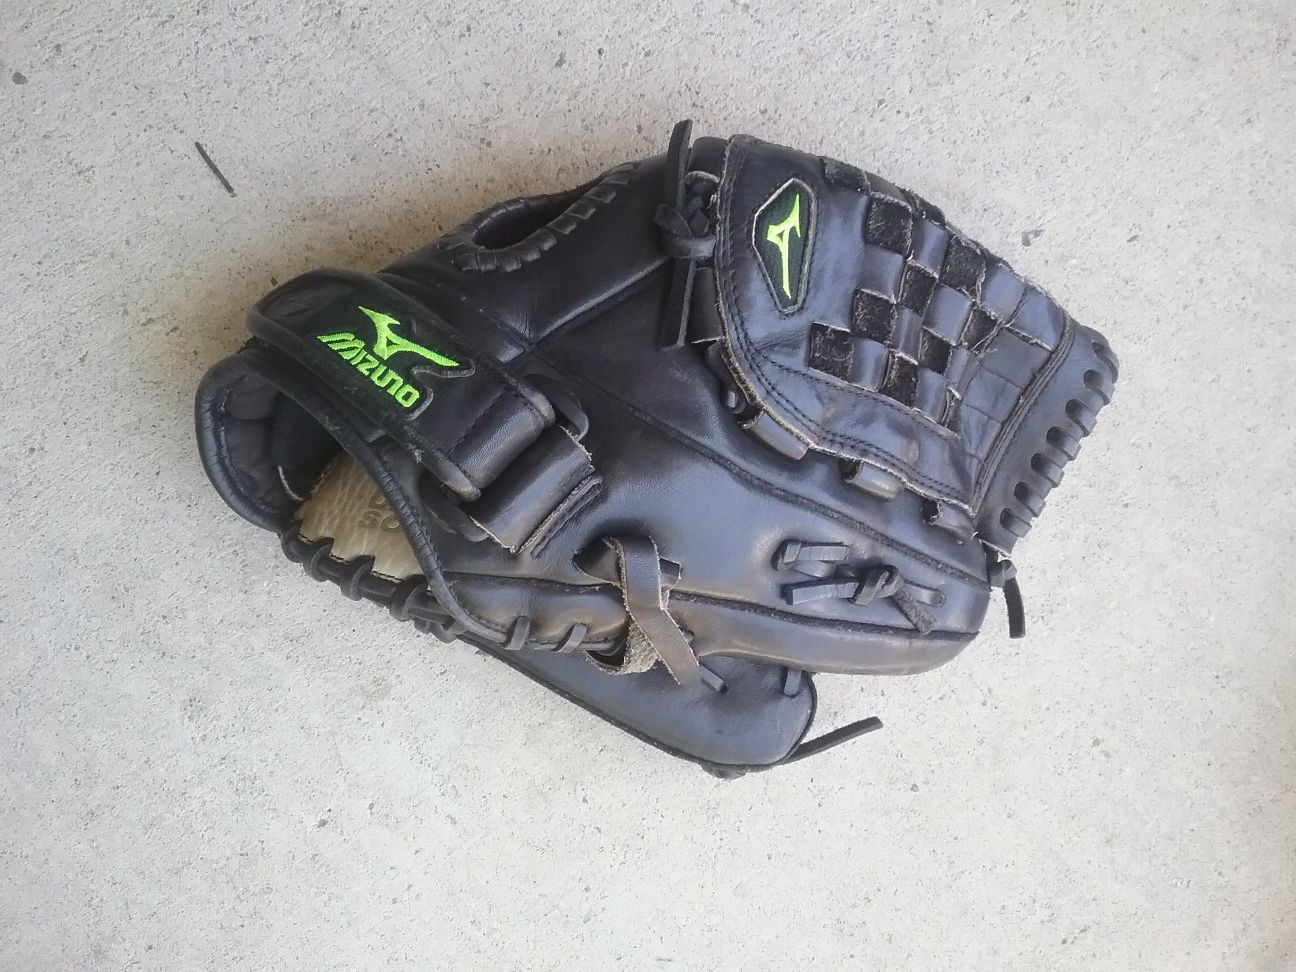 Mizuno softball glove